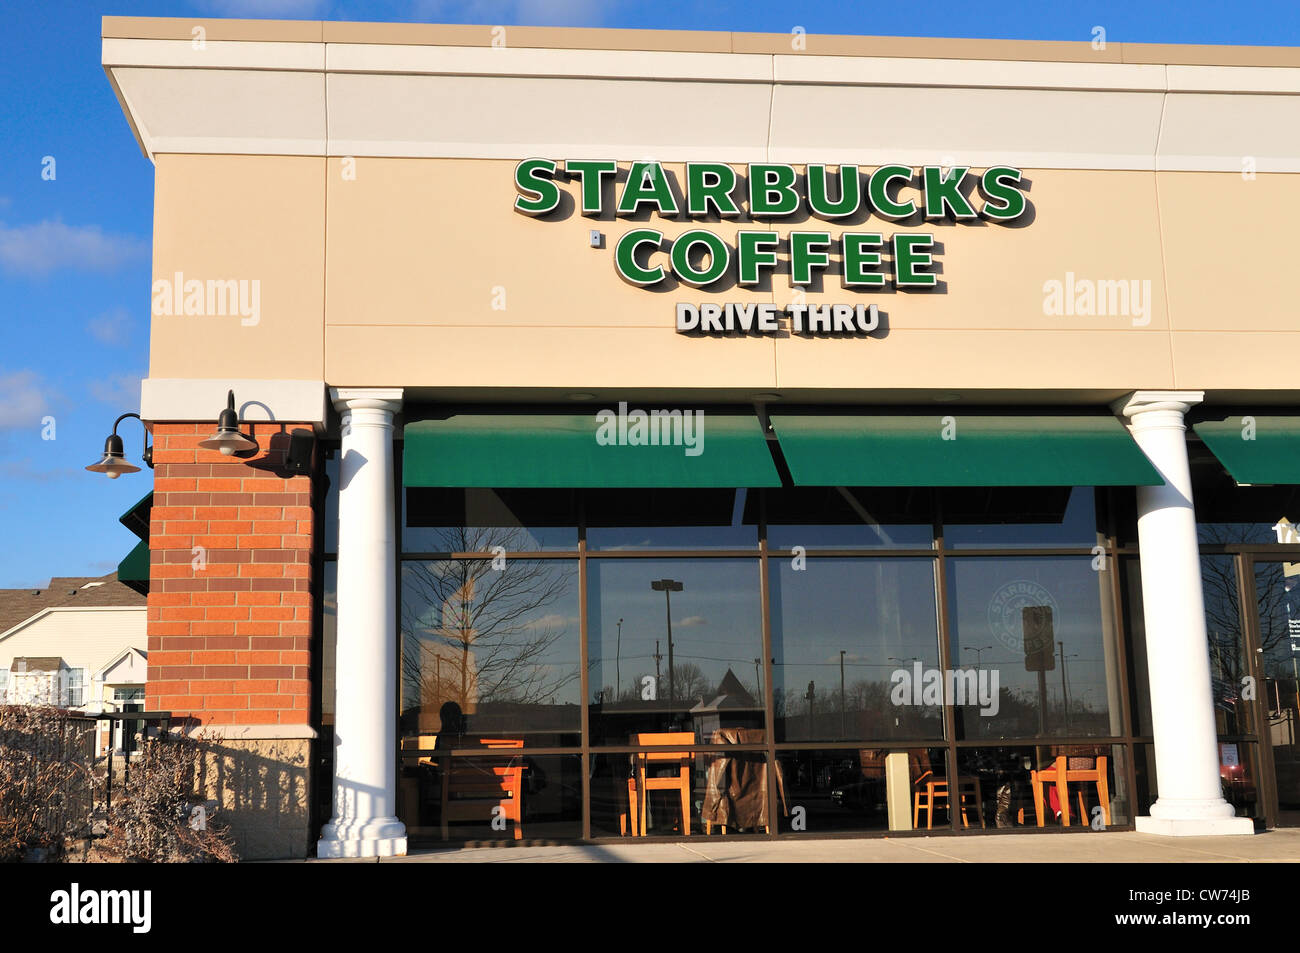 Un café Starbucks franchise dans le nord de l'Illinois. Elgin, Illinois, USA. Banque D'Images